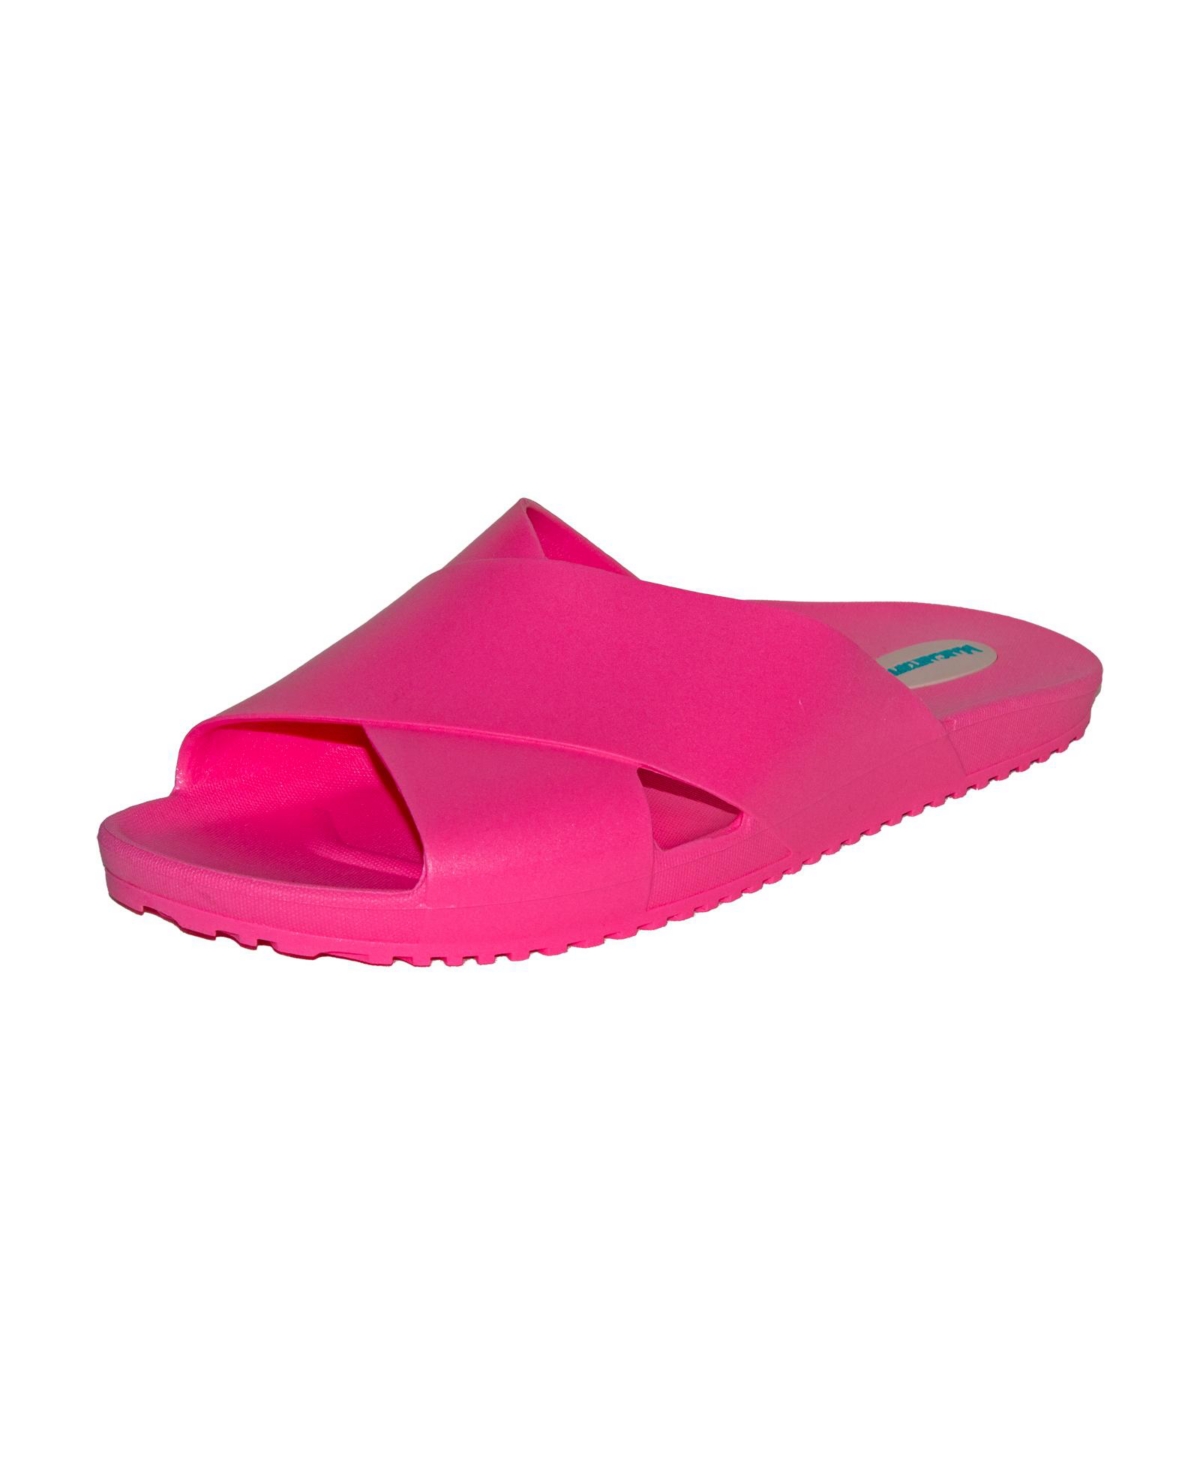 Women's Sandals Maxwell Flip Flop - Pink